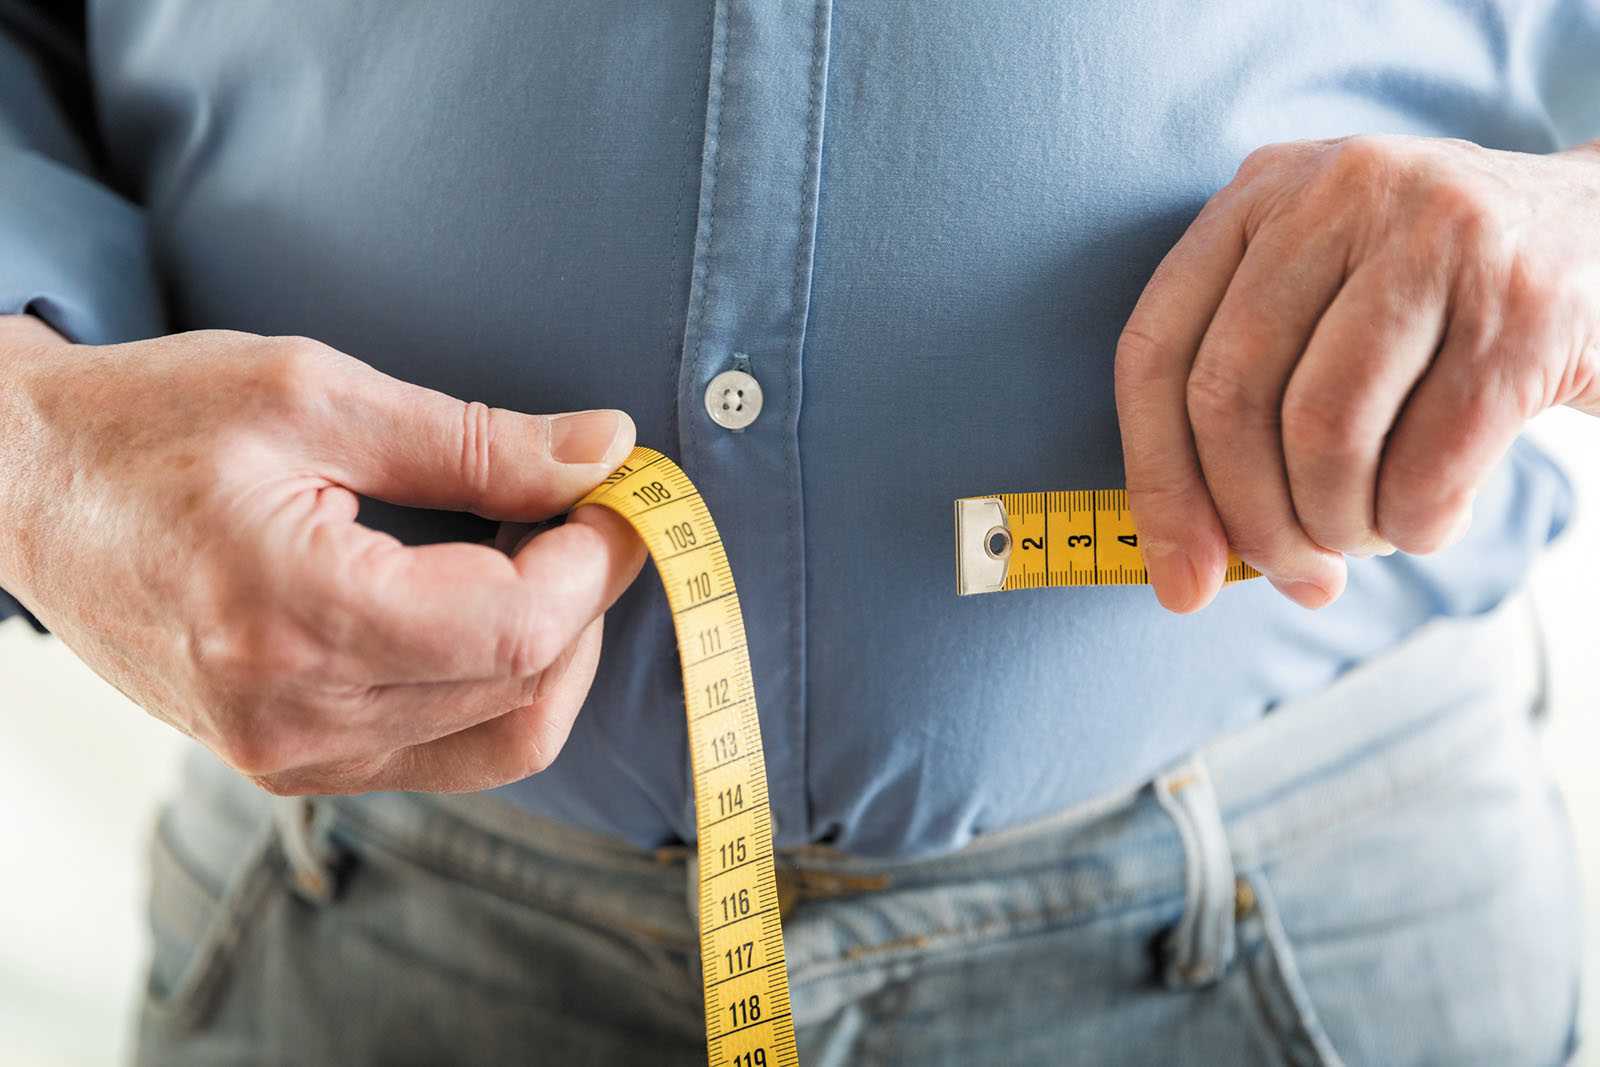 افزایش سن از عوامل موثر بر نرخ طبیعی کاهش وزن